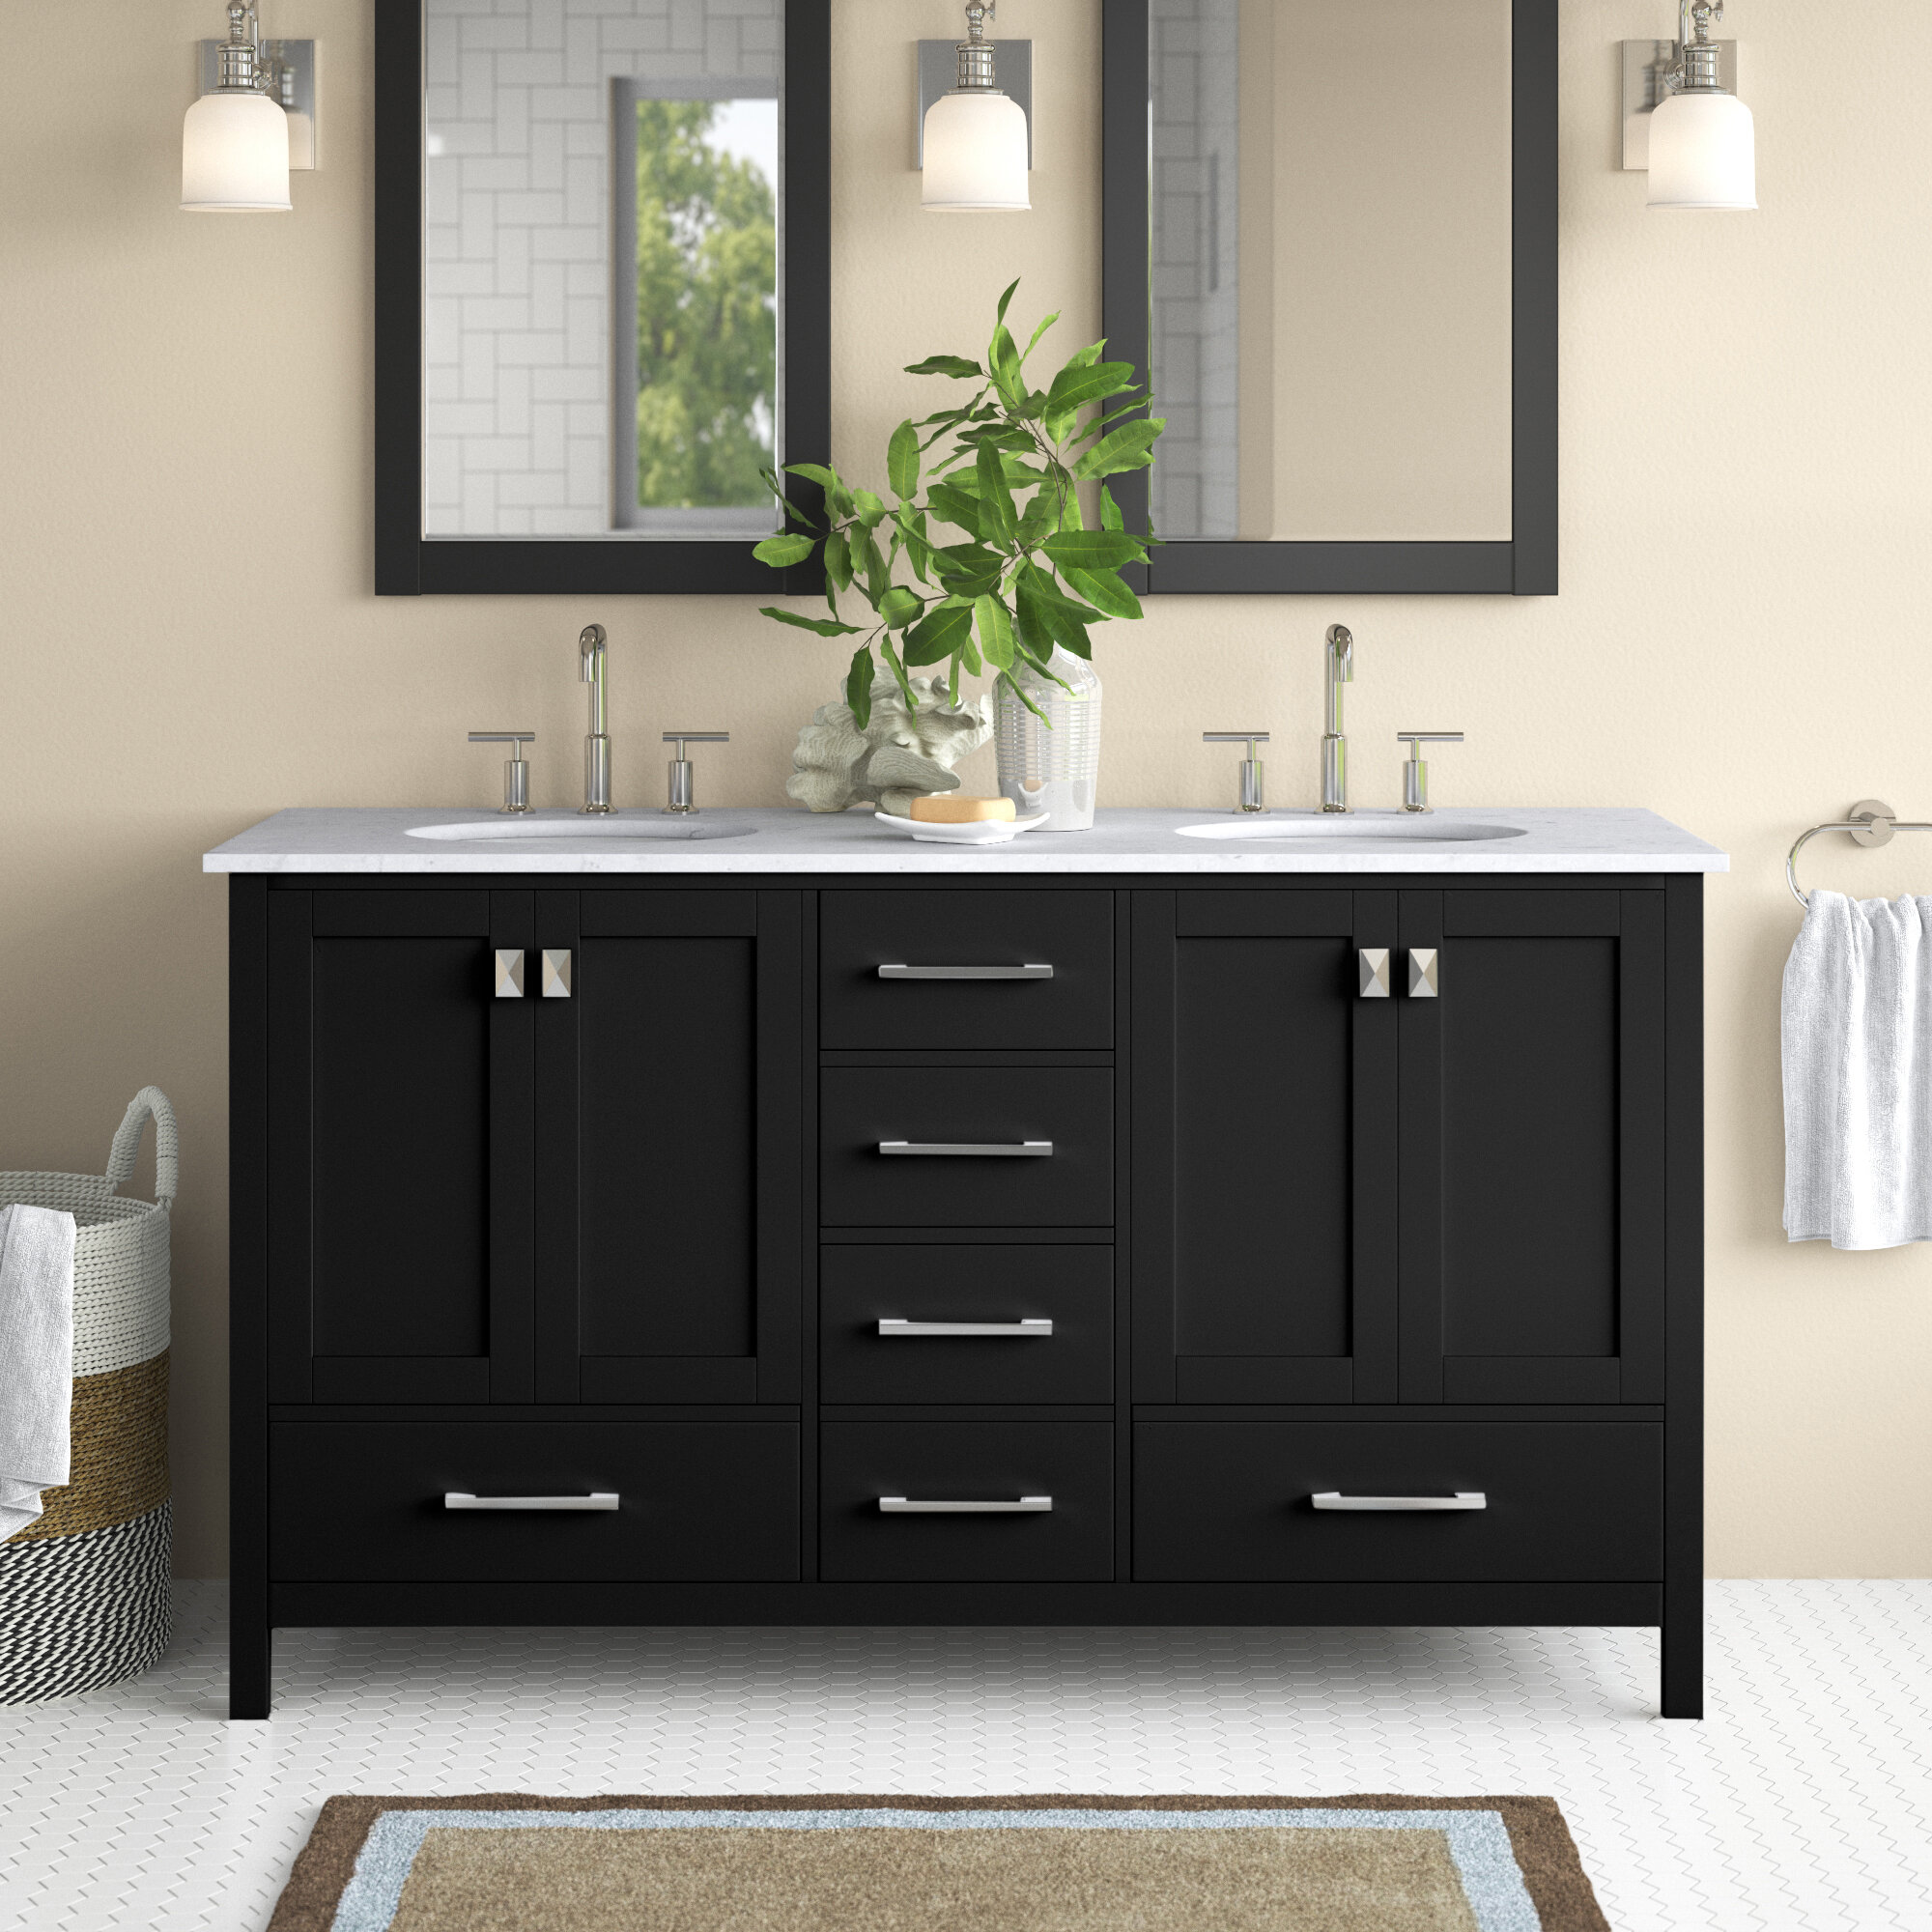 sleek grey marble bathroom with LED lighting, double vanity, and